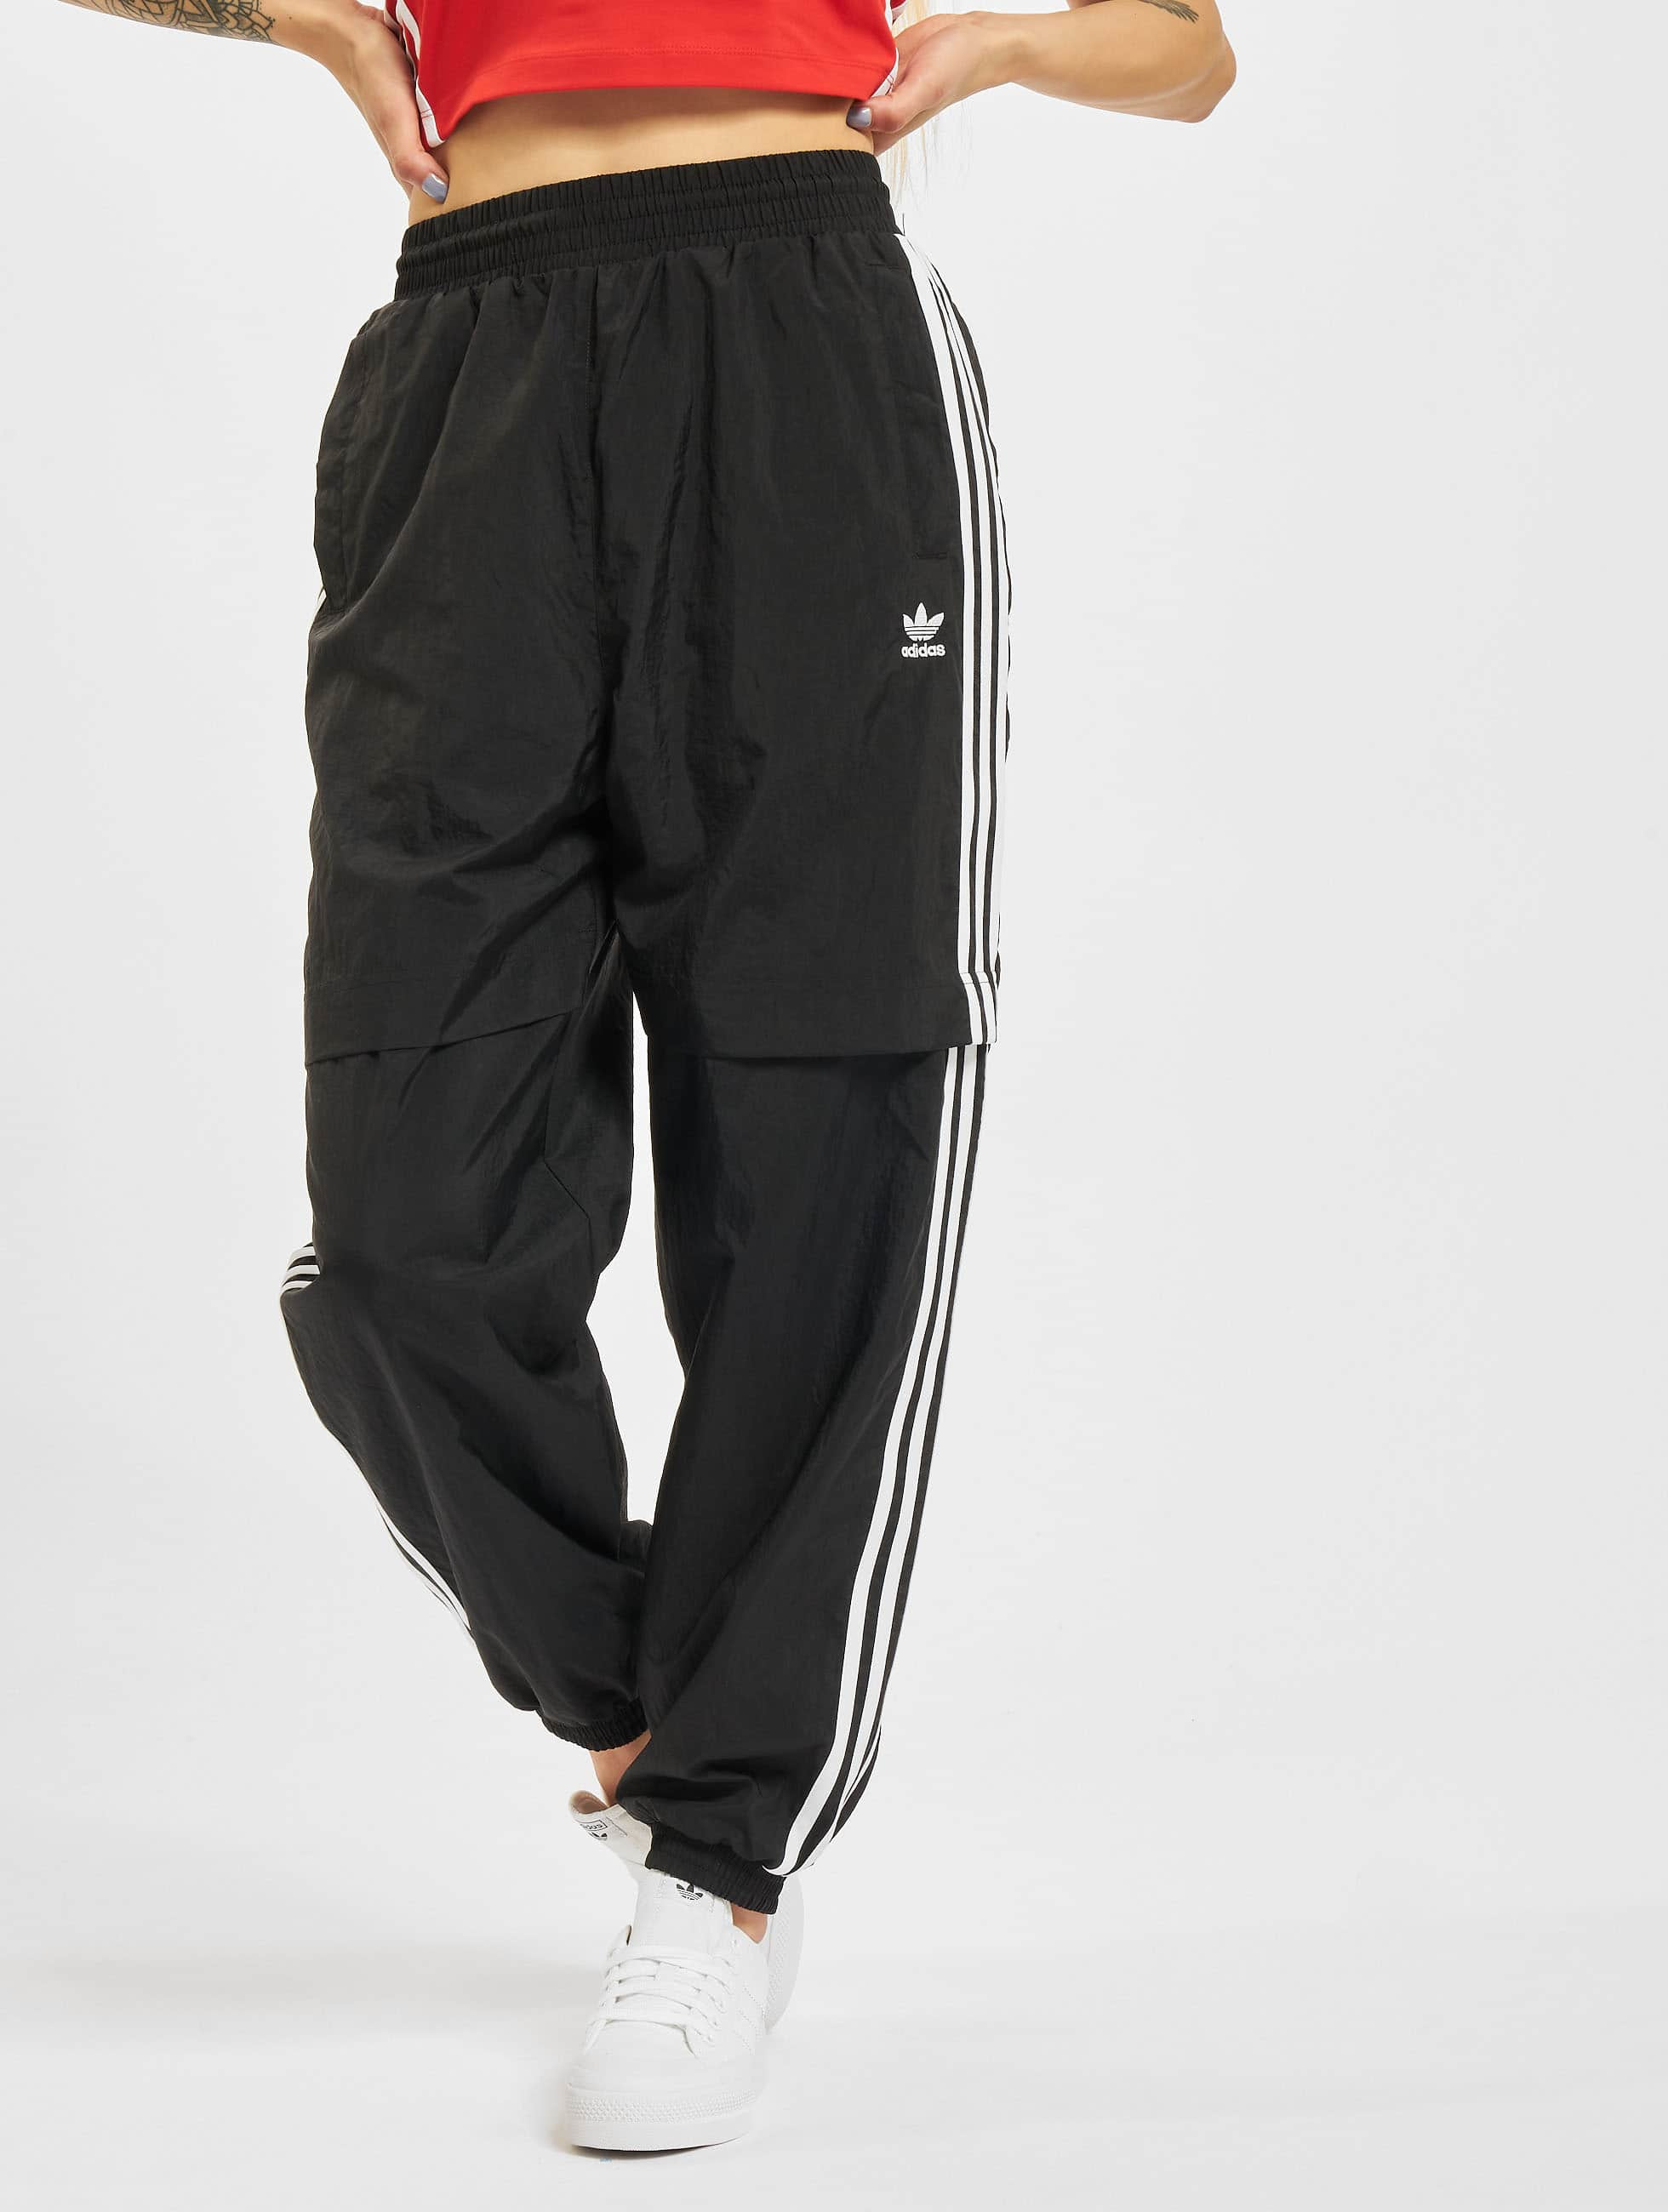 De onze heelal enz adidas Originals broek / joggingbroek Japona TP in zwart 835644